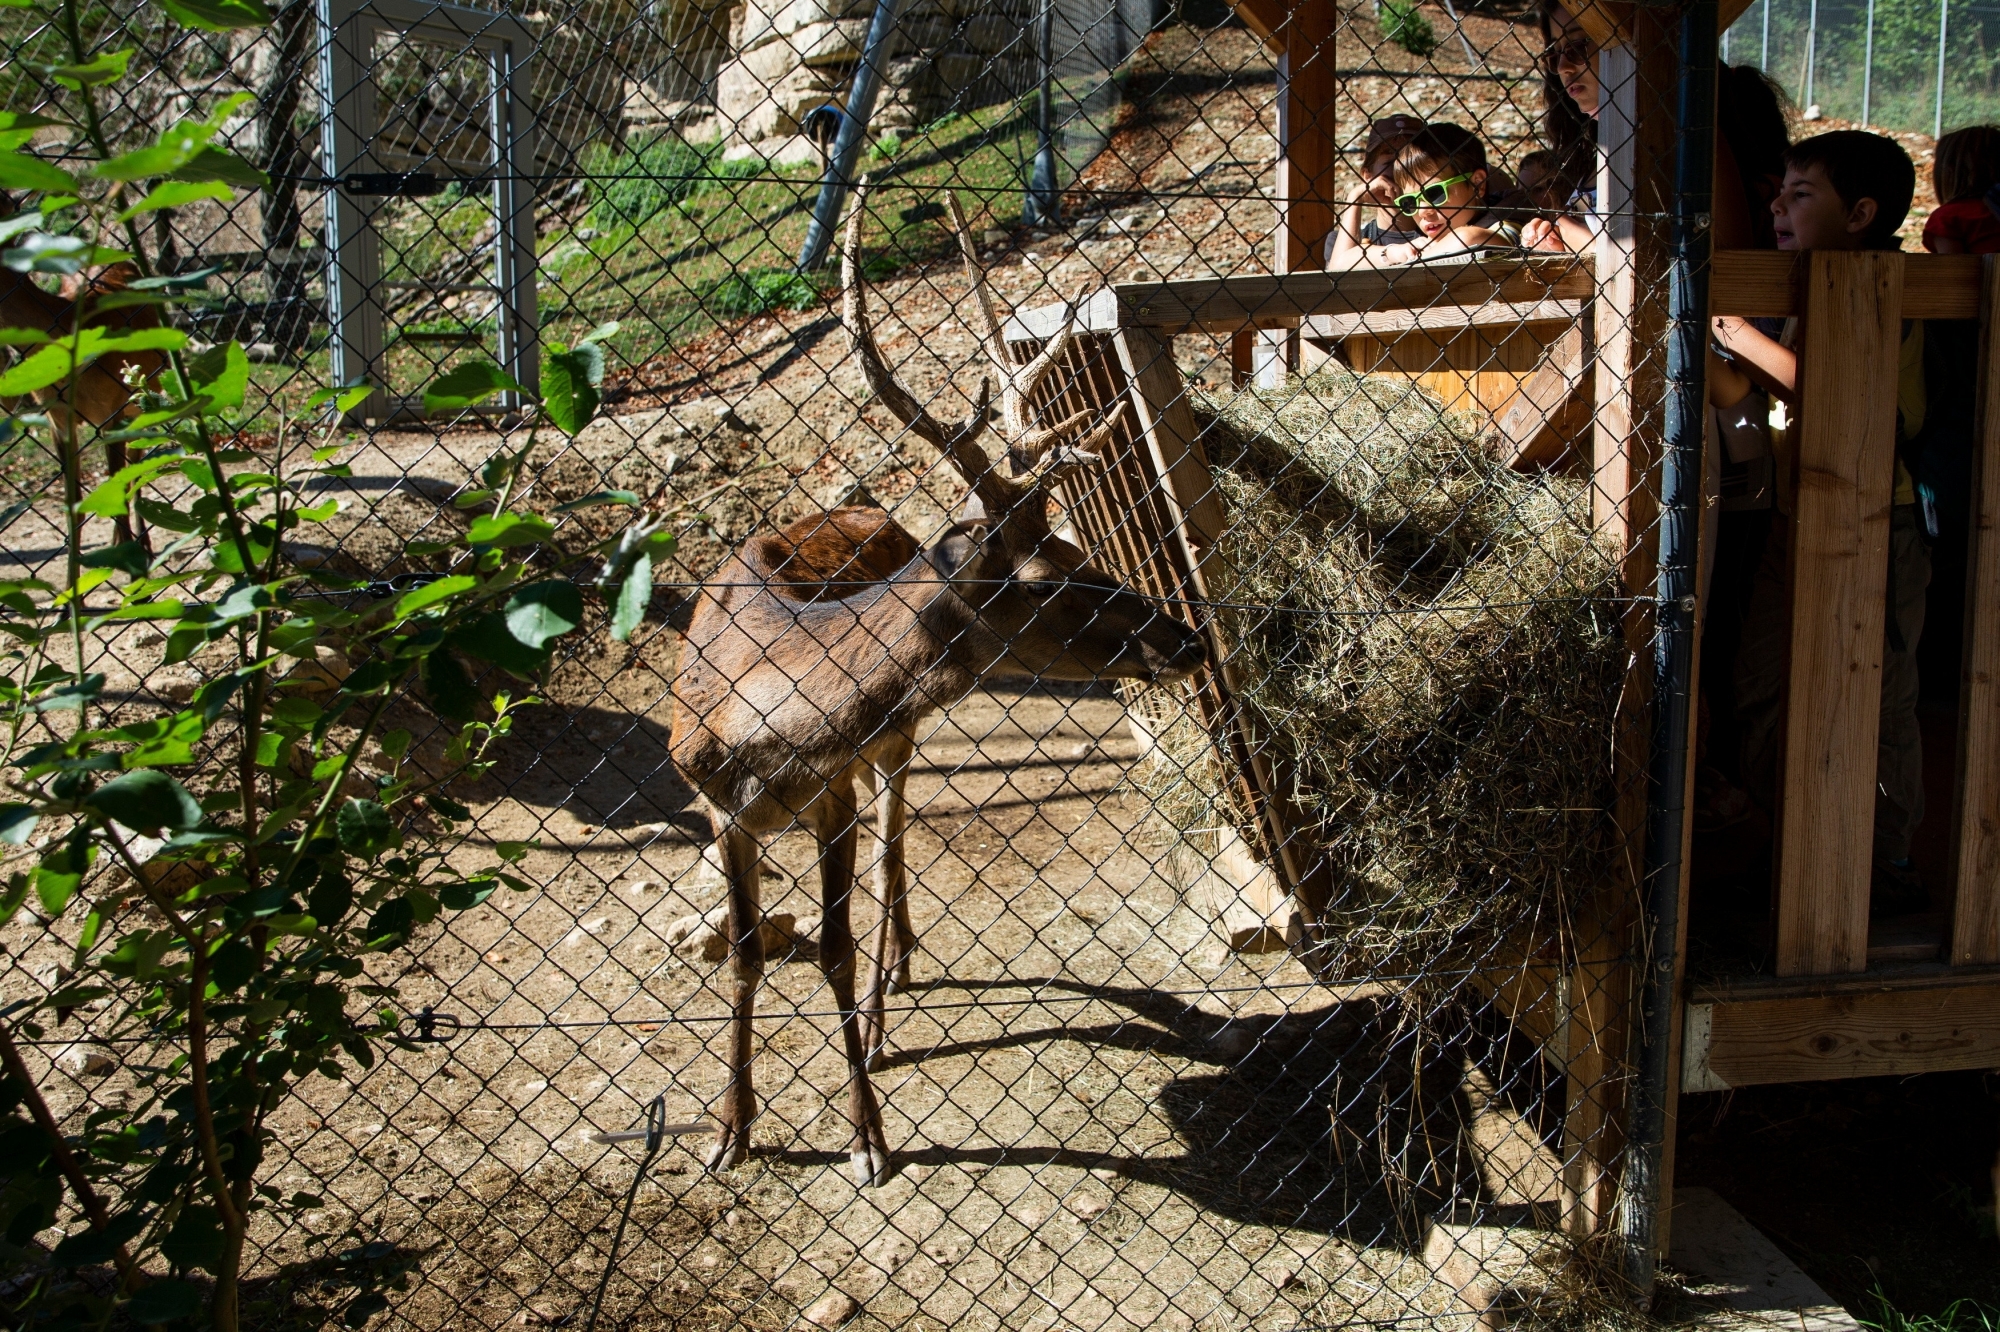 Le parc animalier de La Garenne reste ouvert pendant ce mois de novembre.